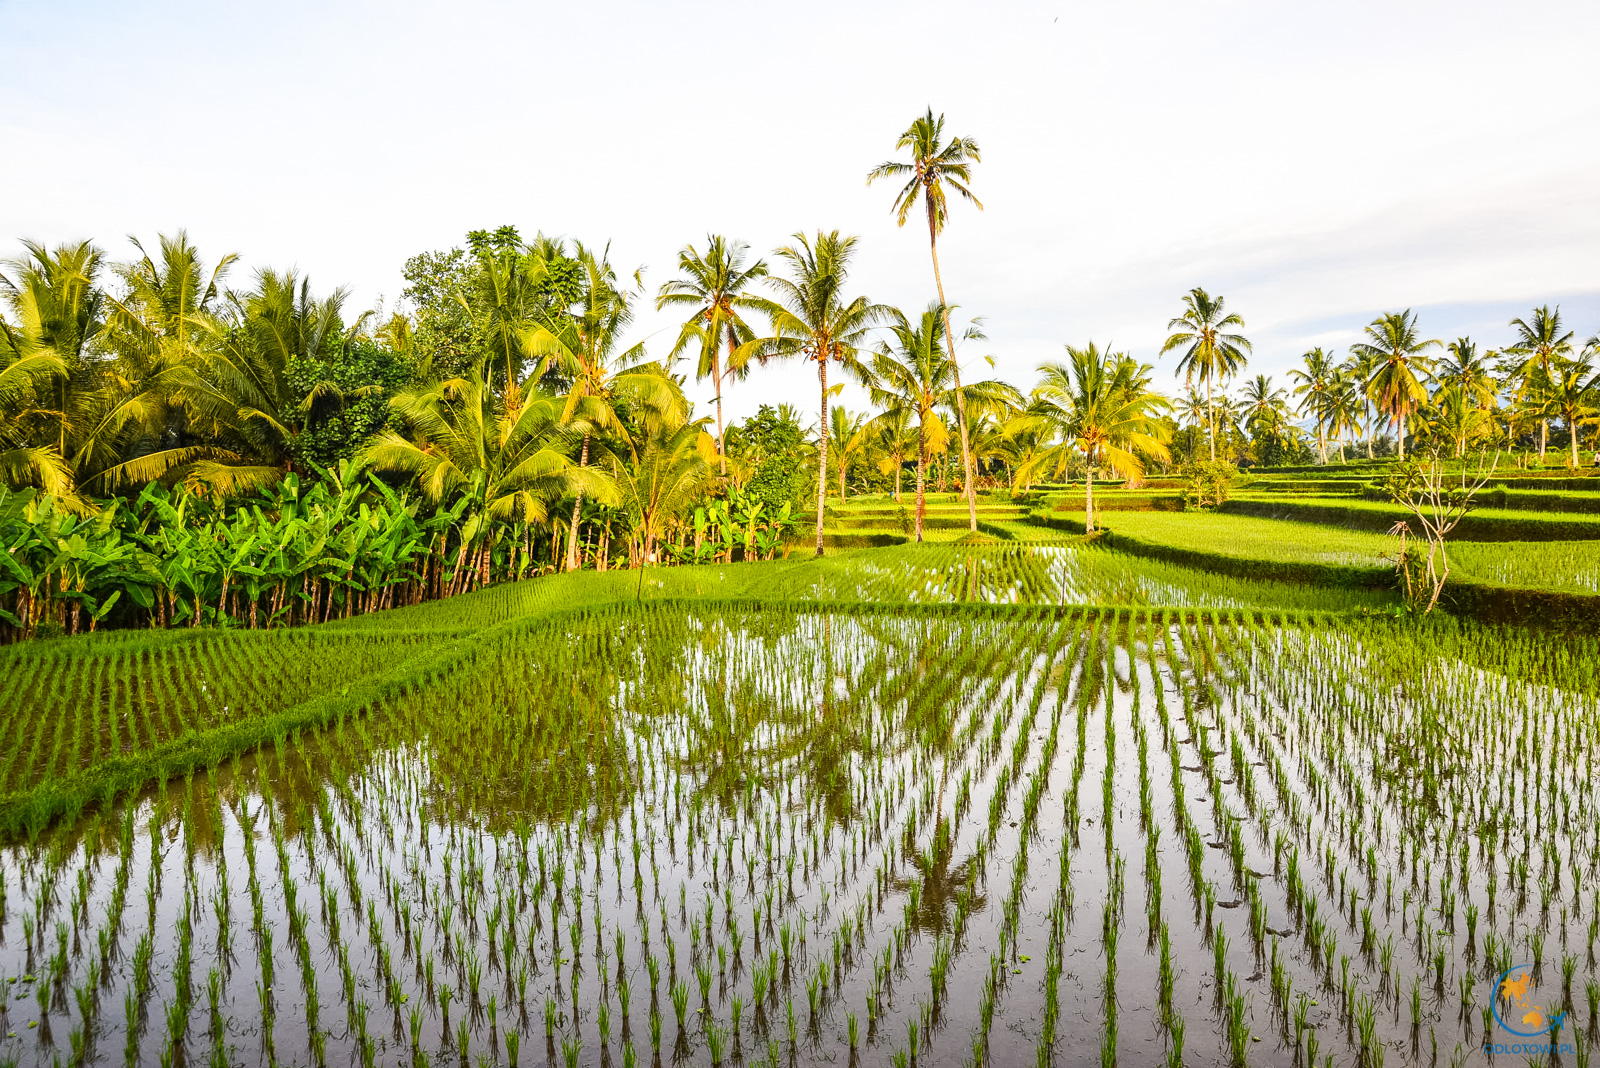 Pola ryżowe na Bali | Bali Rice fields